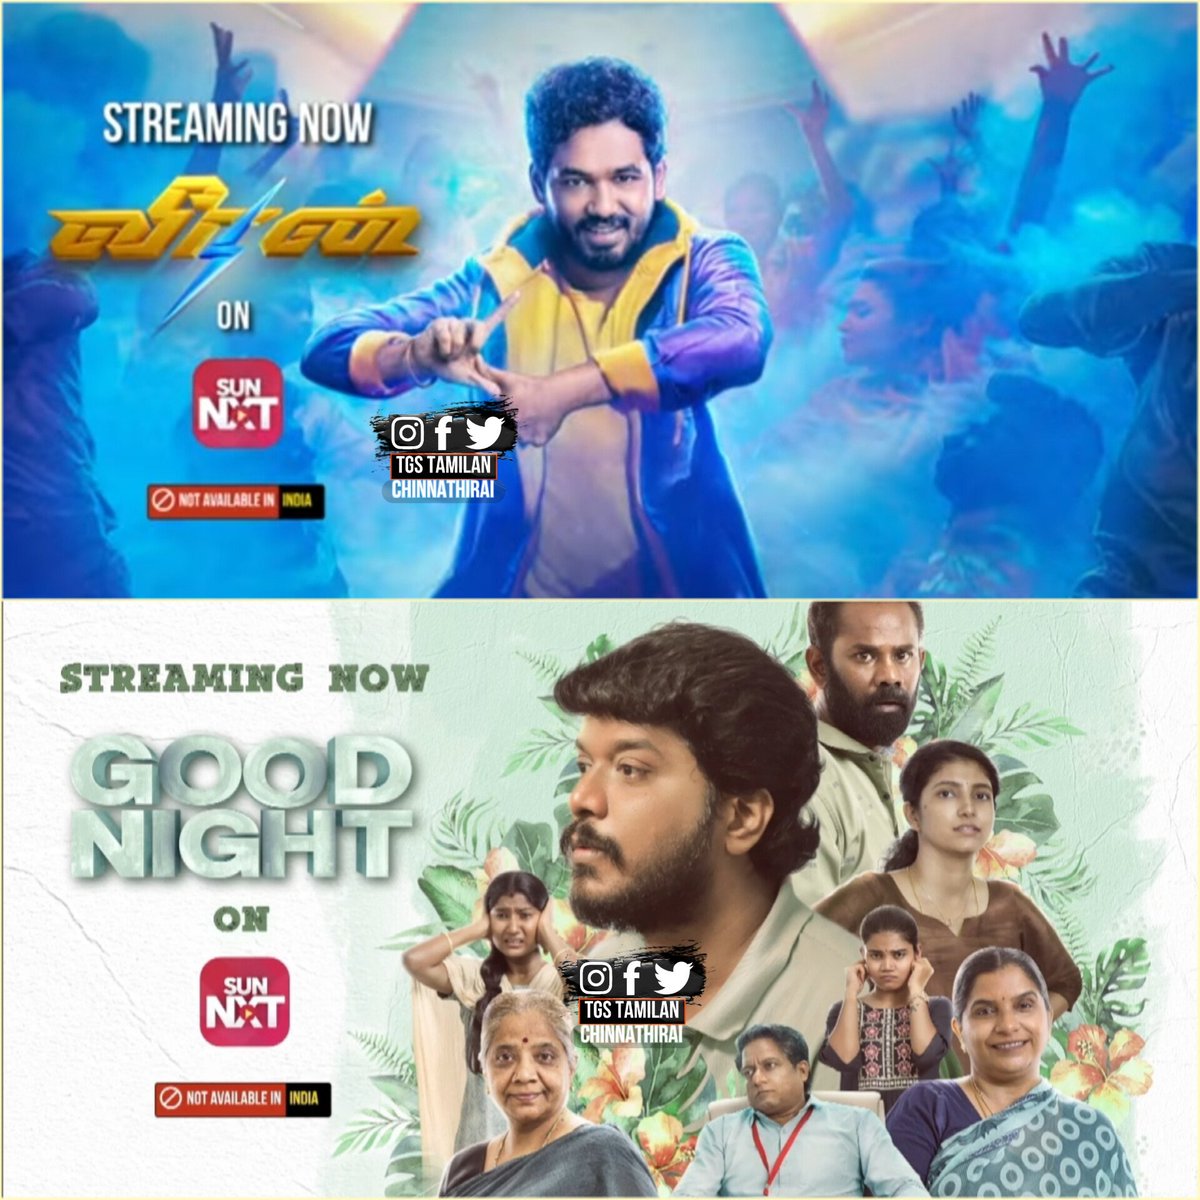 #HiphopTamizha in #Veeran &  #goodnight Now Streaming On #SunNXT ( Overseas - Not Available India )

#GoodnightOnSunNXT #VeeranOnSunNXT #TamilMovies #MoviesOnSunNXT #ottnews
#TgsTamilanChinnathirai